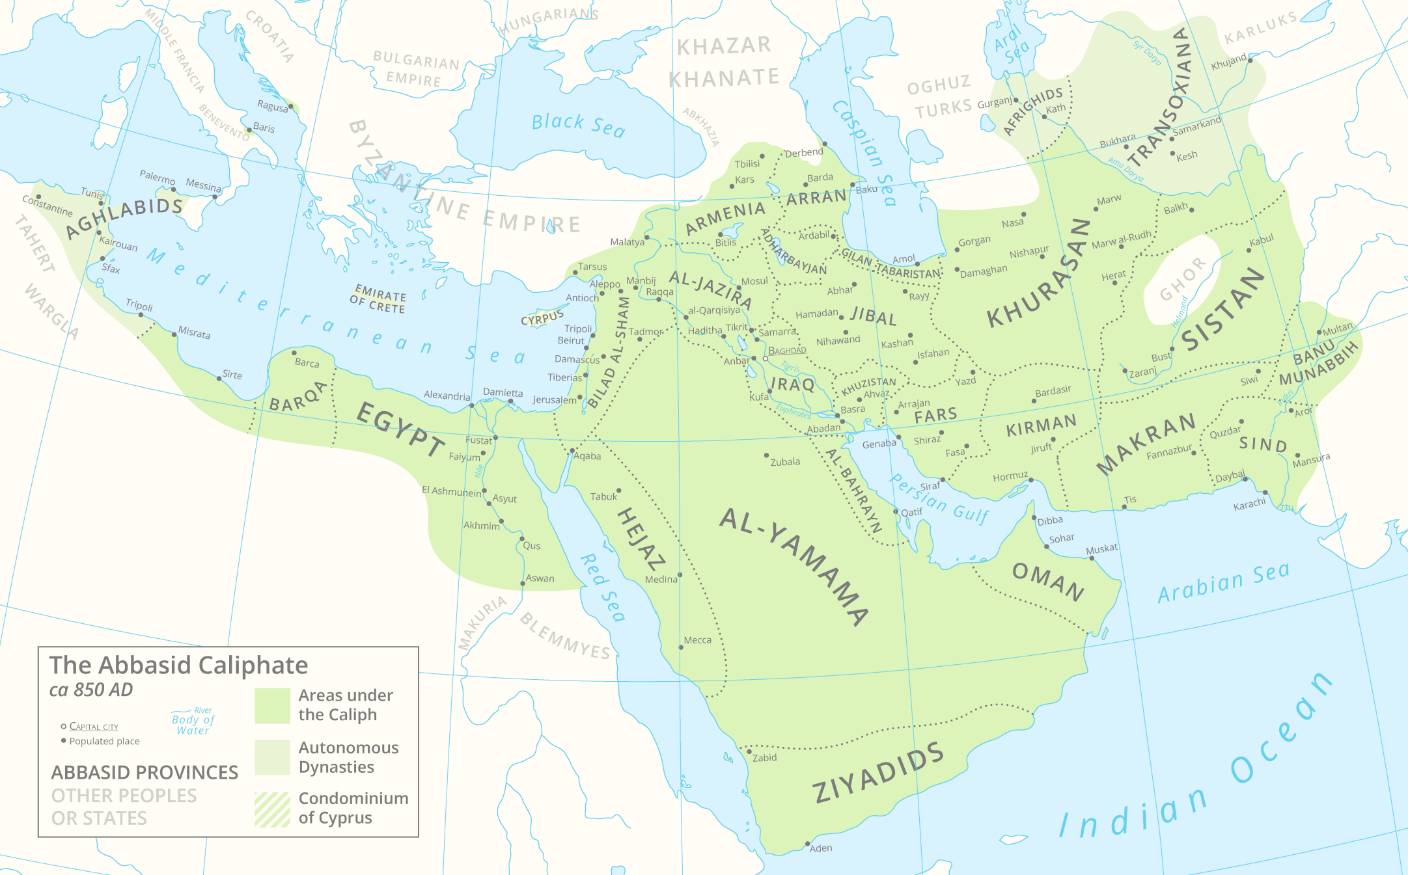 Karte des abbasidischen Kalifats (Quelle: https://de.wikipedia.org/wiki/Abbasiden-Kalifat#/media/Datei:Abbasid_Caliphate_850AD.png)